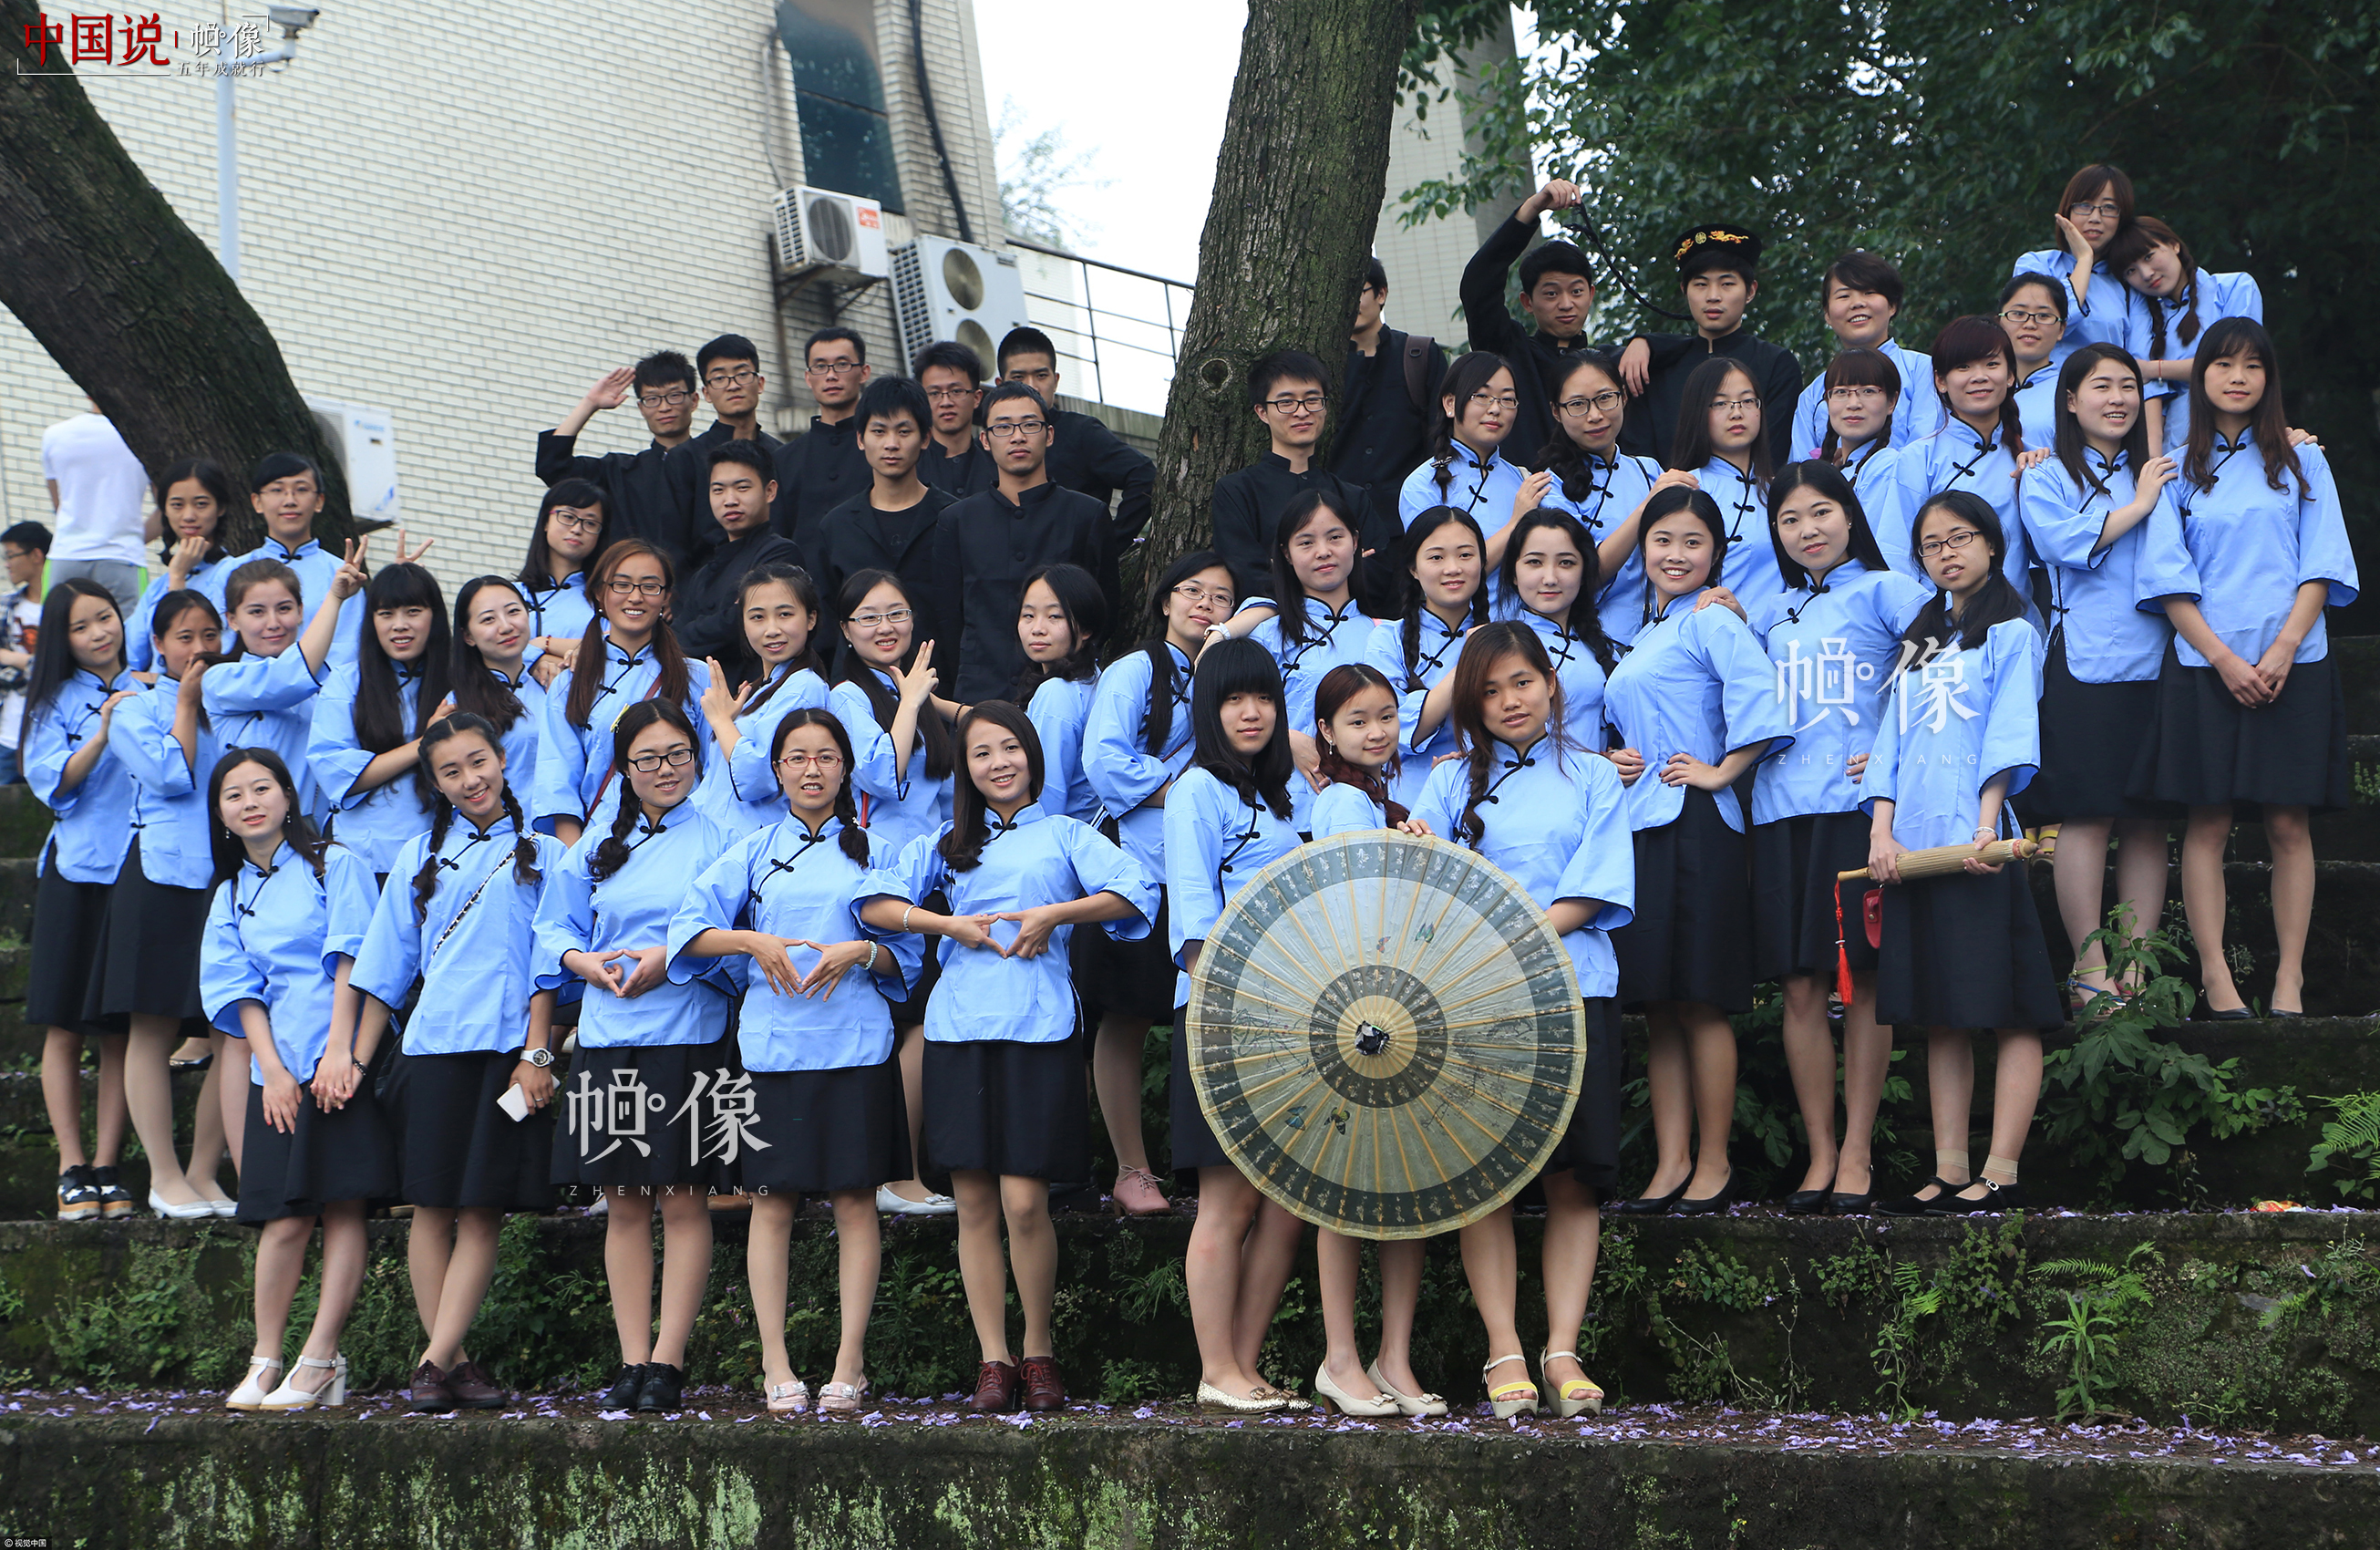 2015年5月23日，重慶市北碚區西南大學校園內，身著民國服裝的大學畢業生正在拍攝畢業照。視覺中國供圖